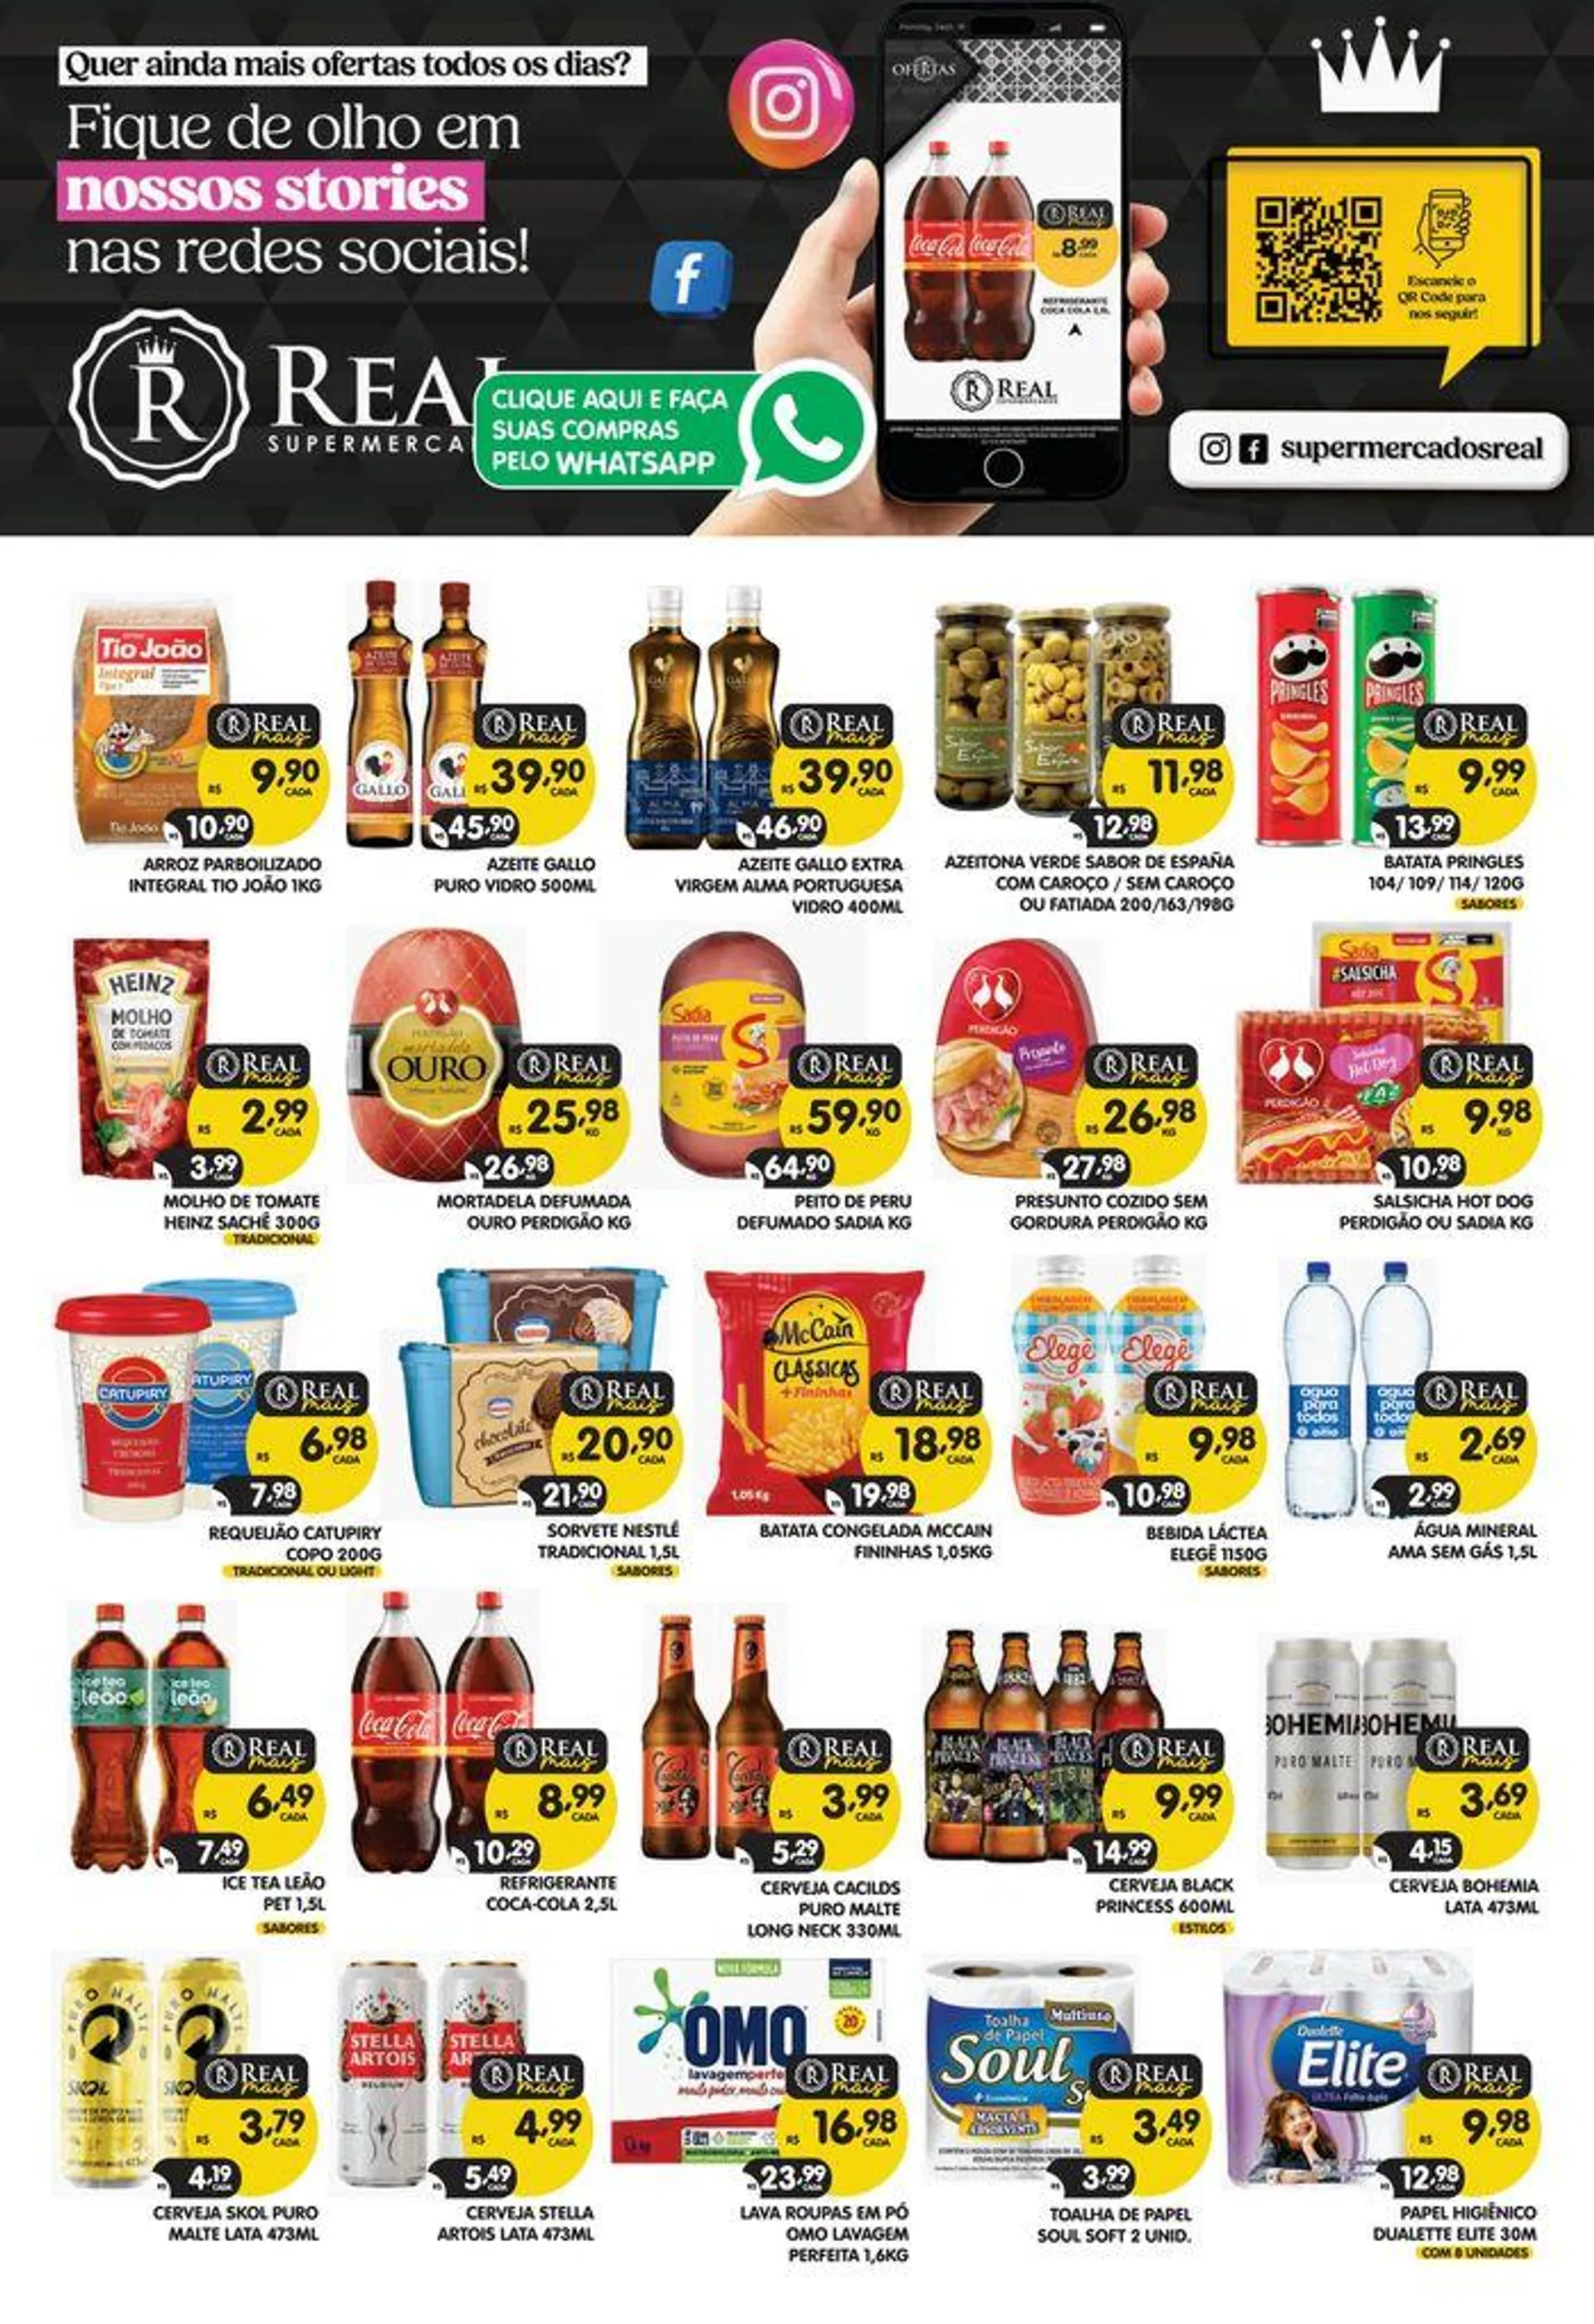  Ofertas Supermercados Real  - 1